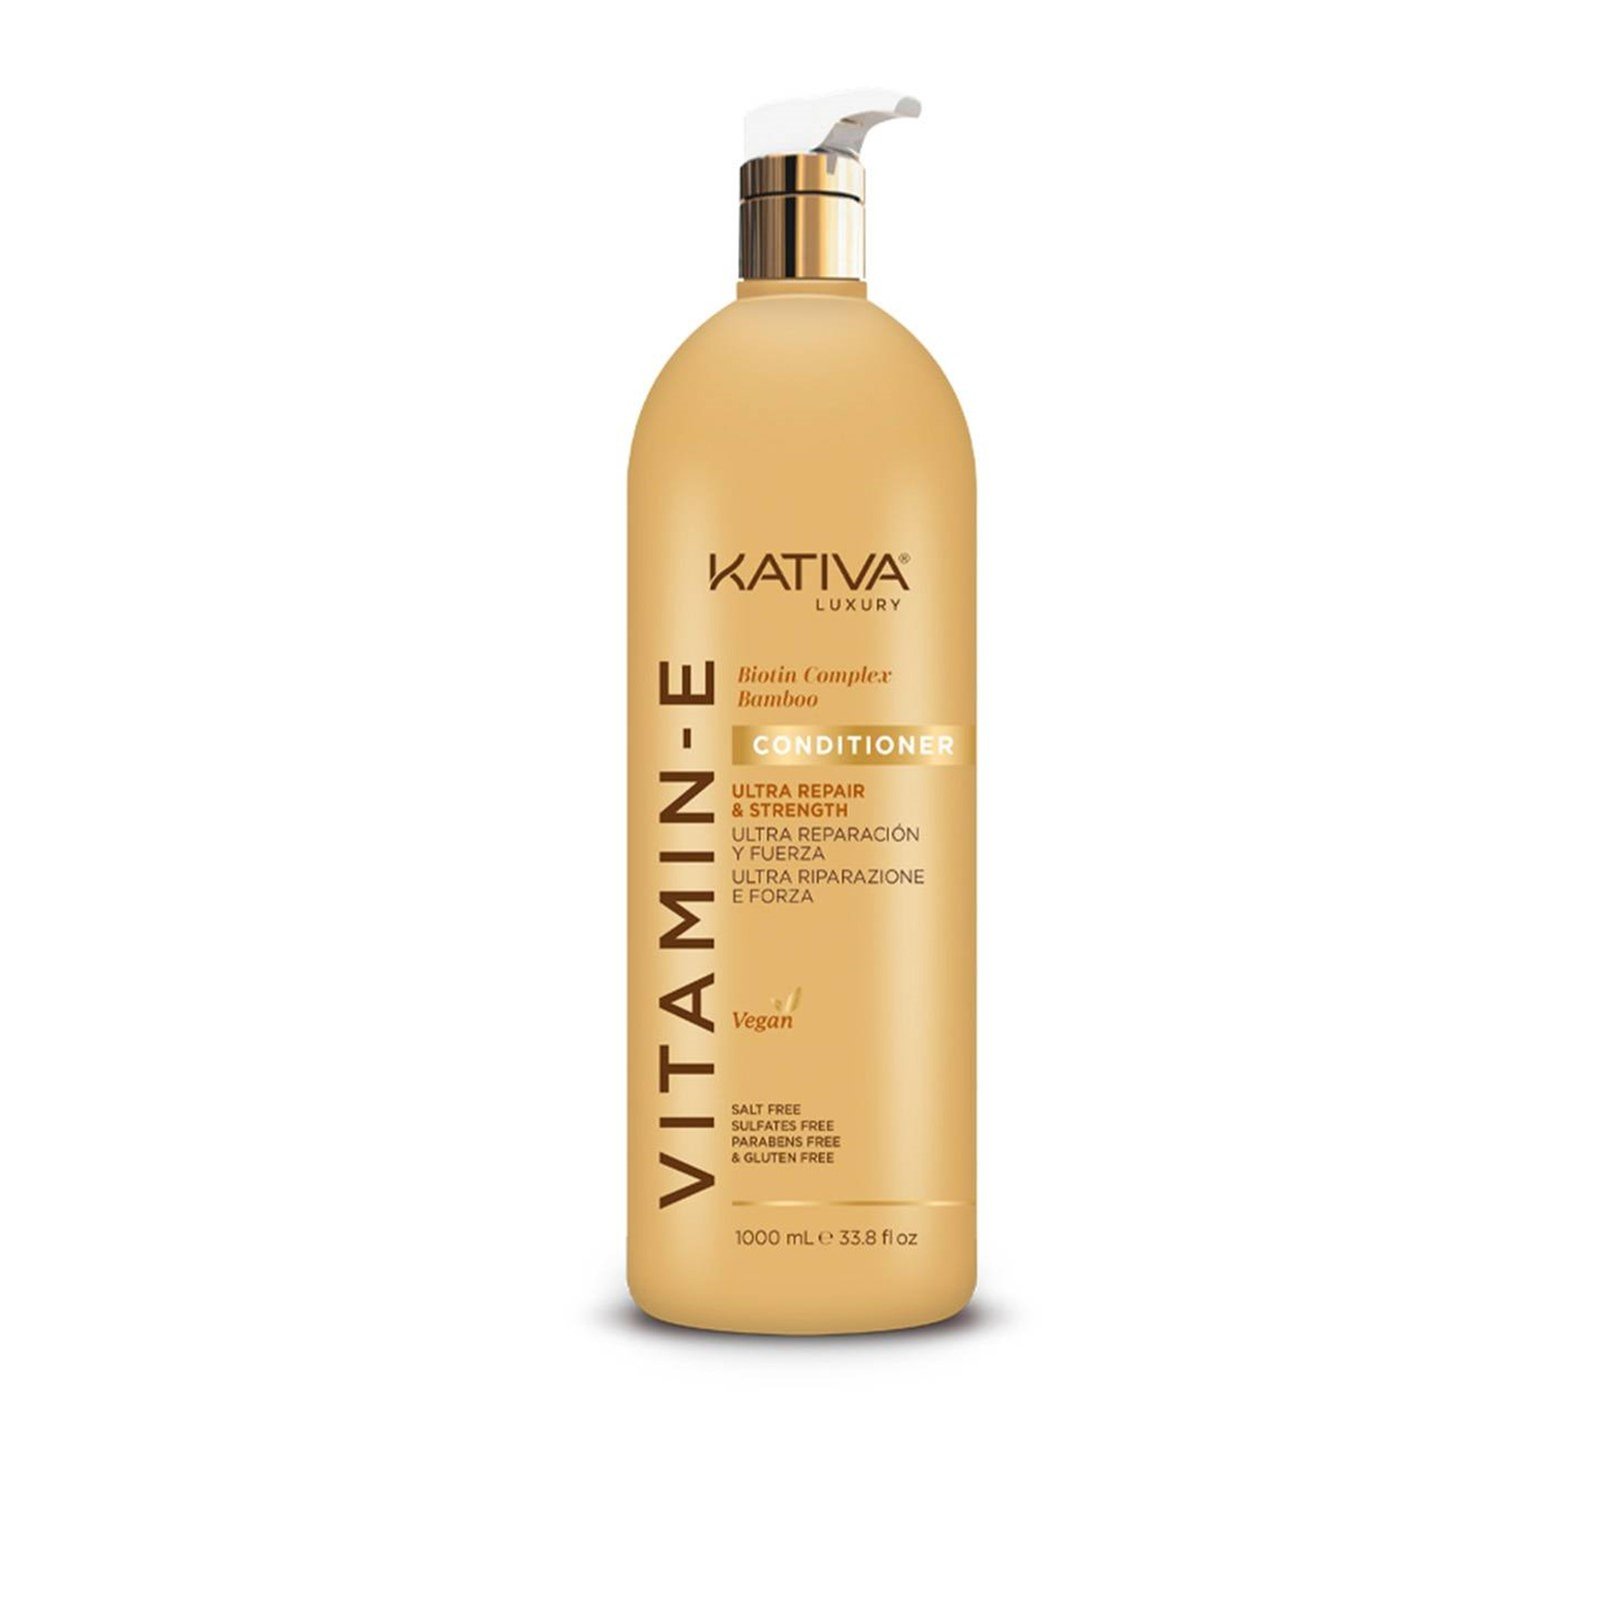 Kativa Luxury Vitamin-E Ultra Repair & Strength Conditioner 1L (33.8 fl oz)